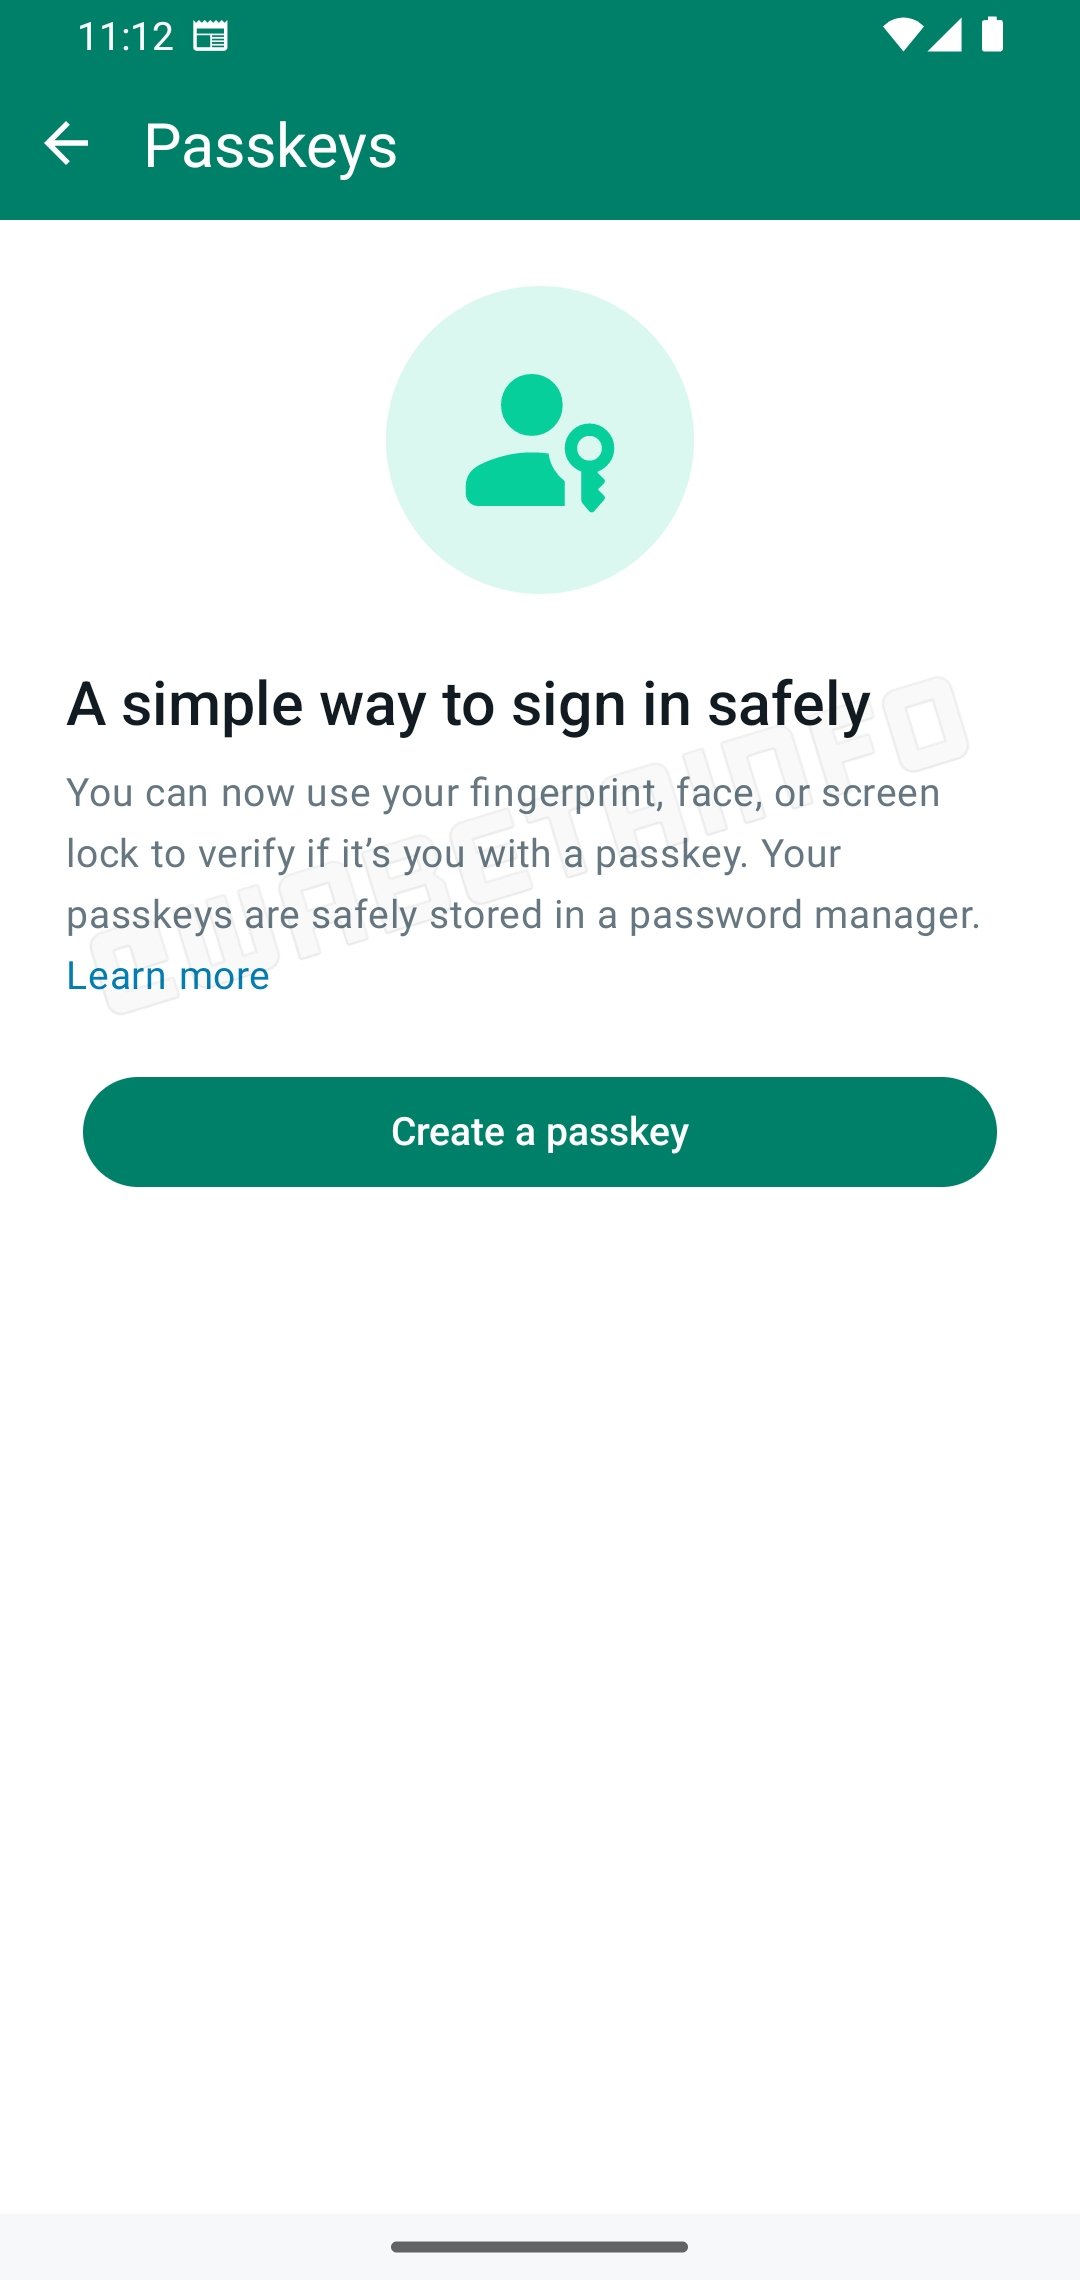 whatsapp com mensagem de configuração das passkeys